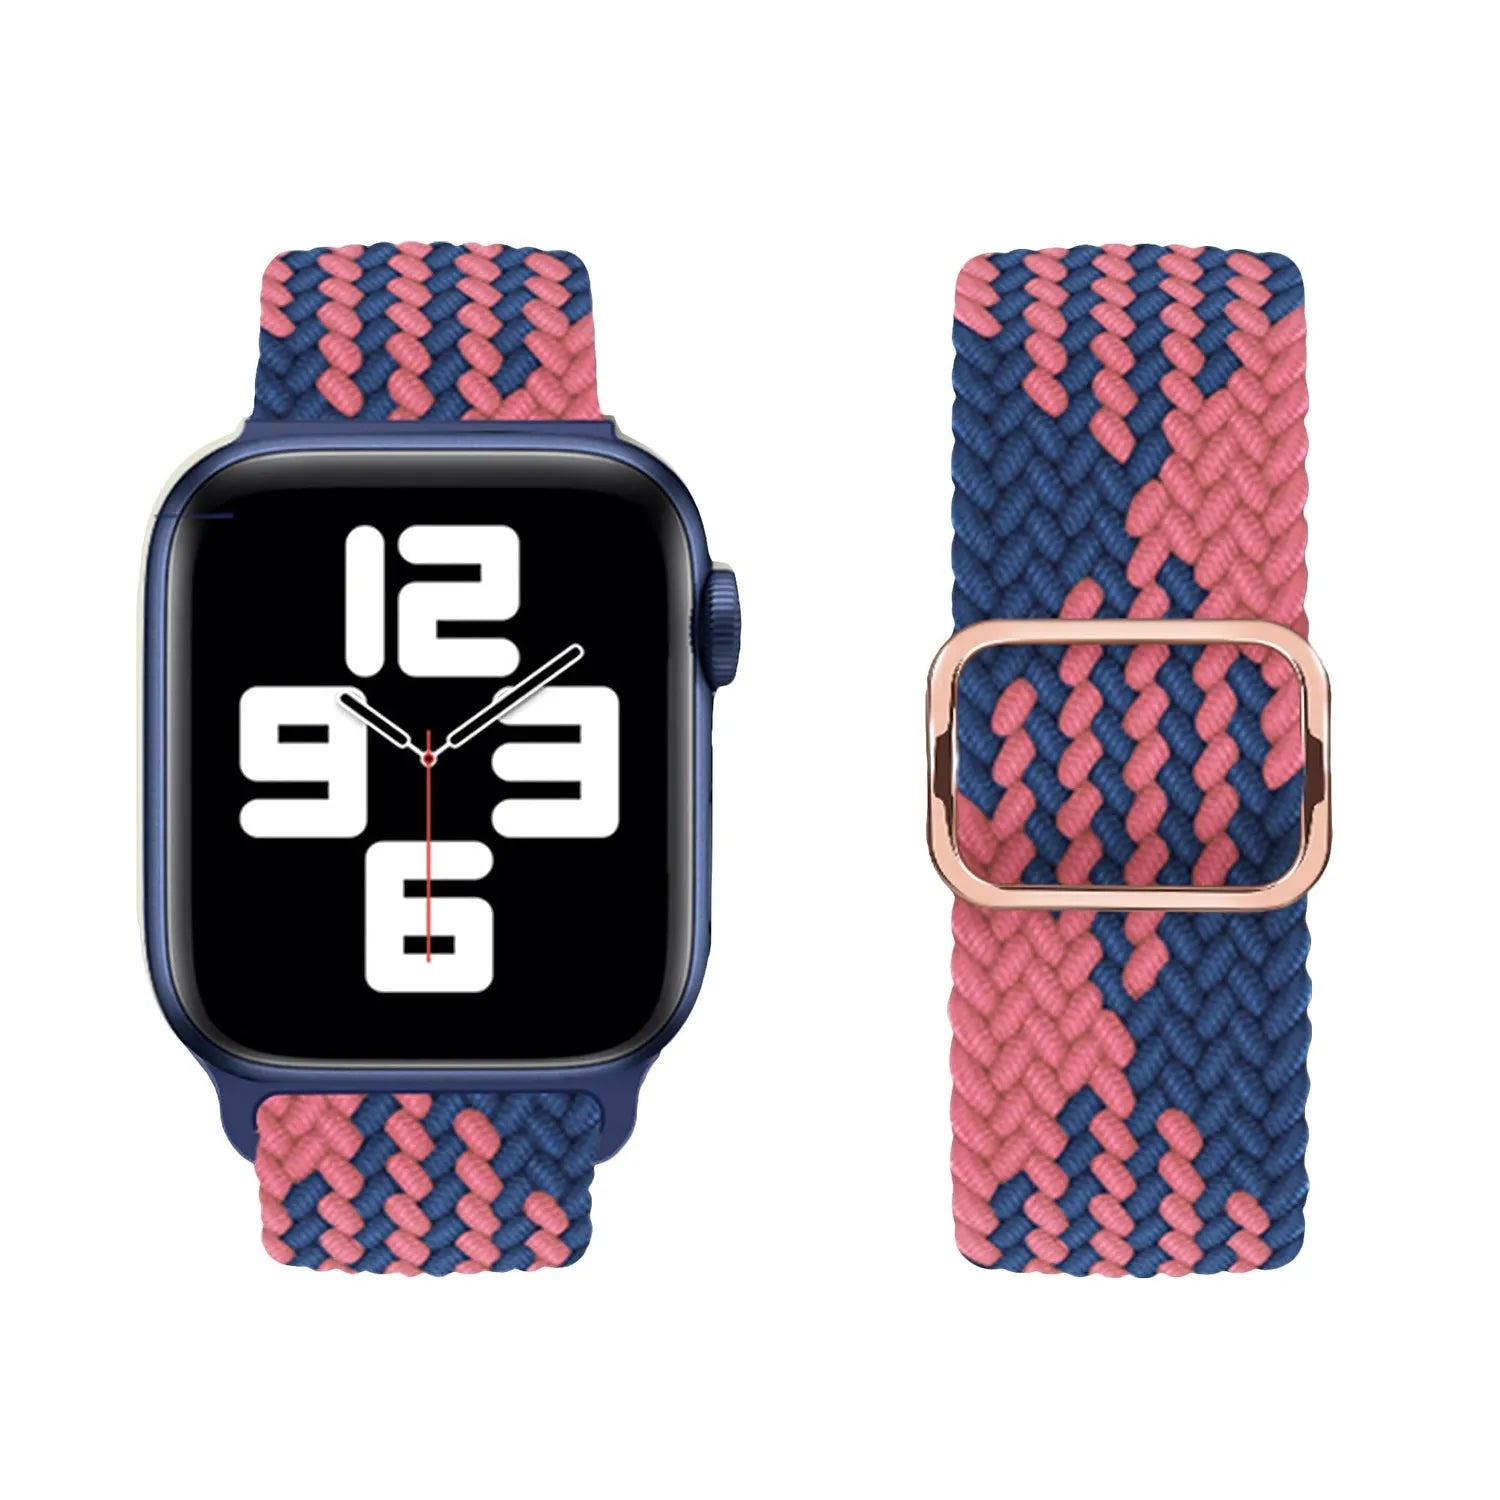 Adjustable Apple Watch Braided Loop#color_blue/pink